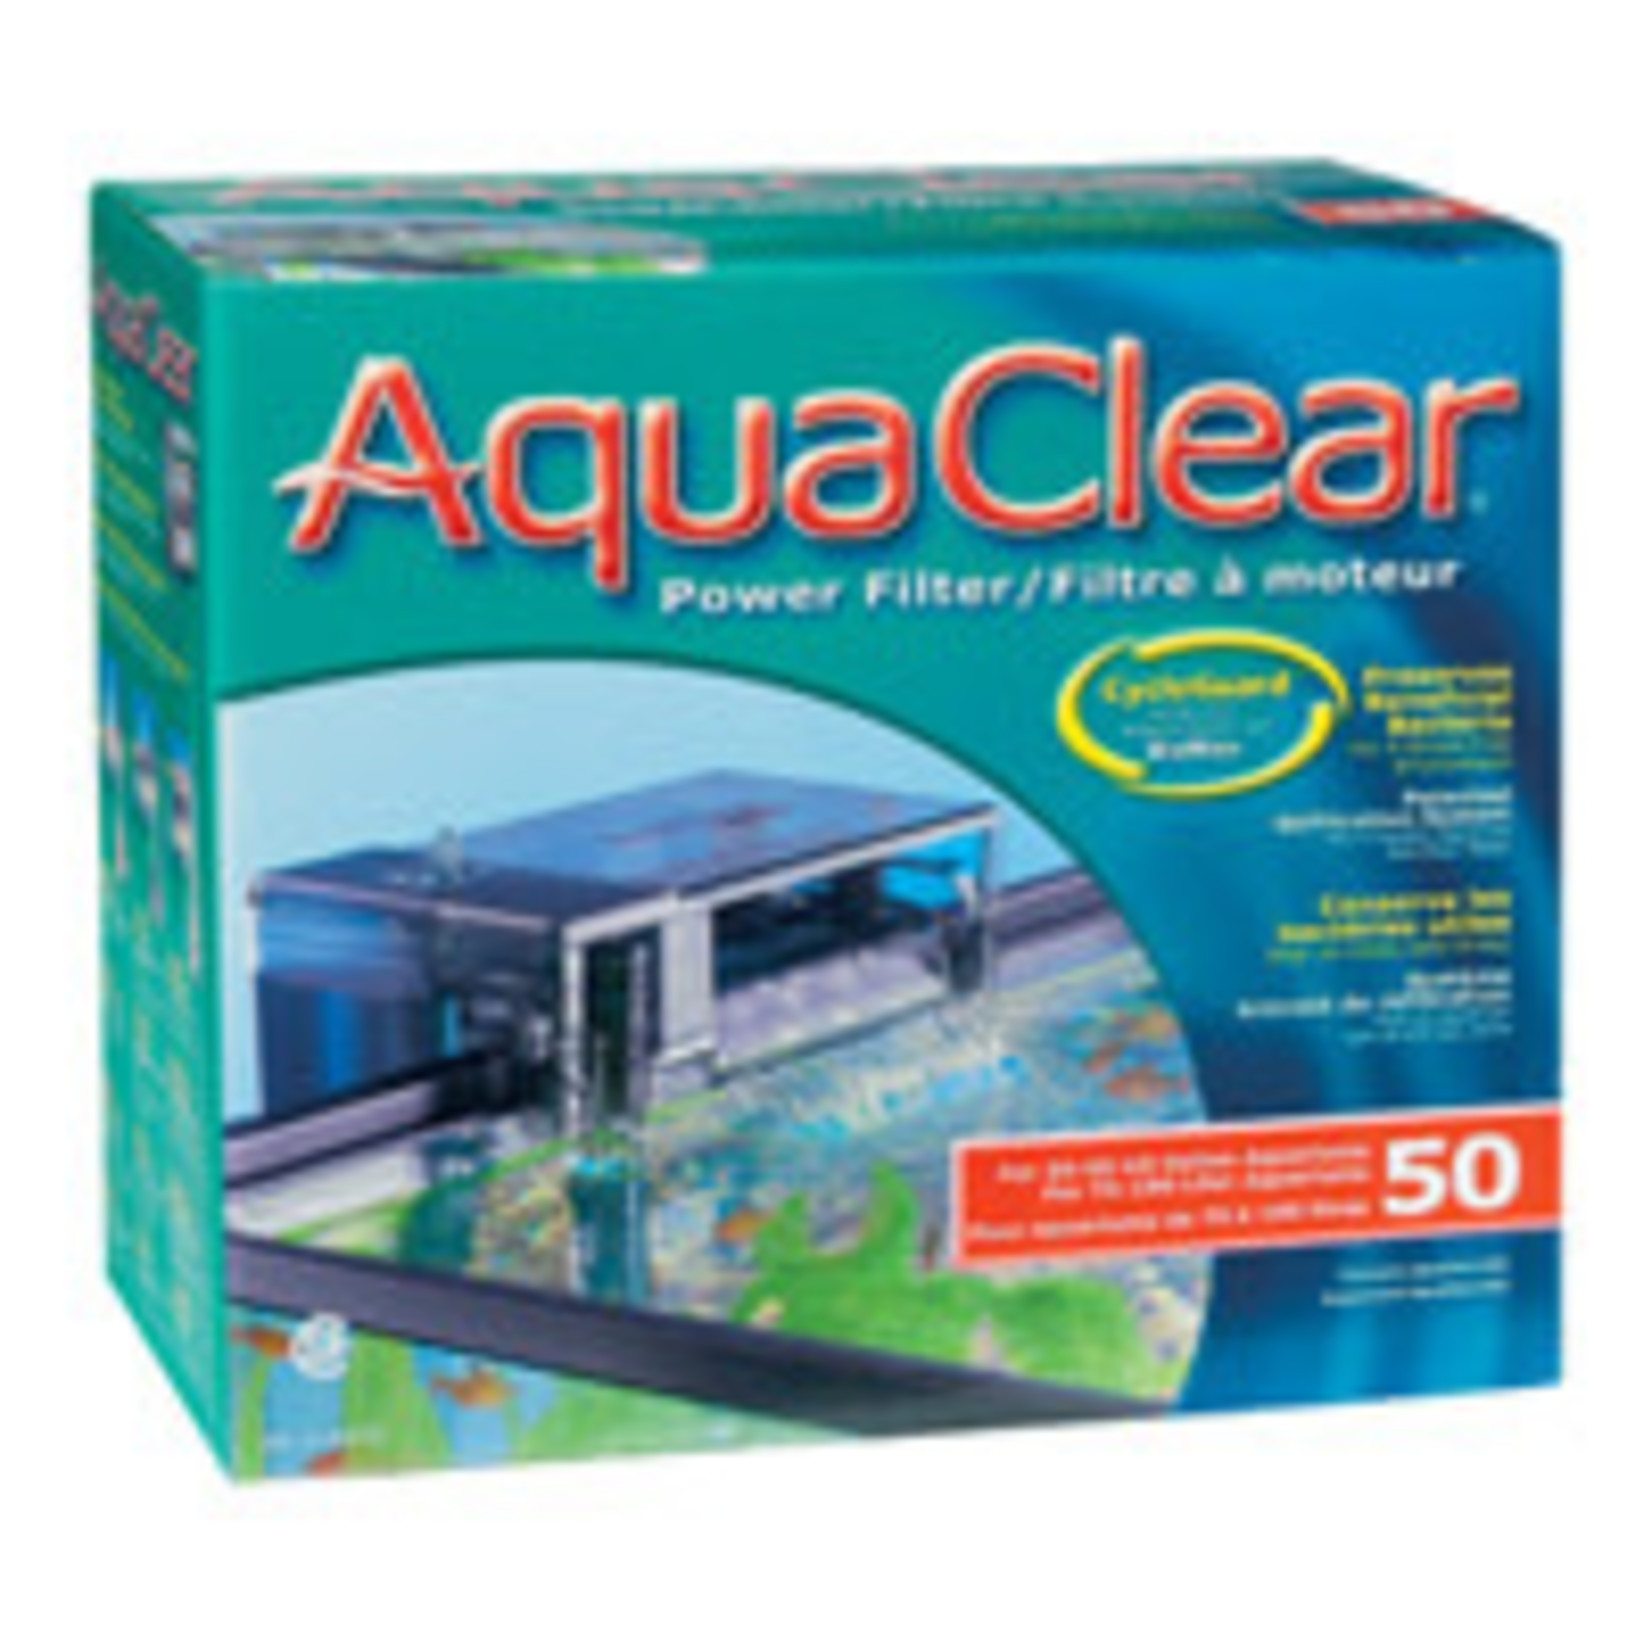 AquaClear Aqua Clear 50 (200) Filter w/ Media